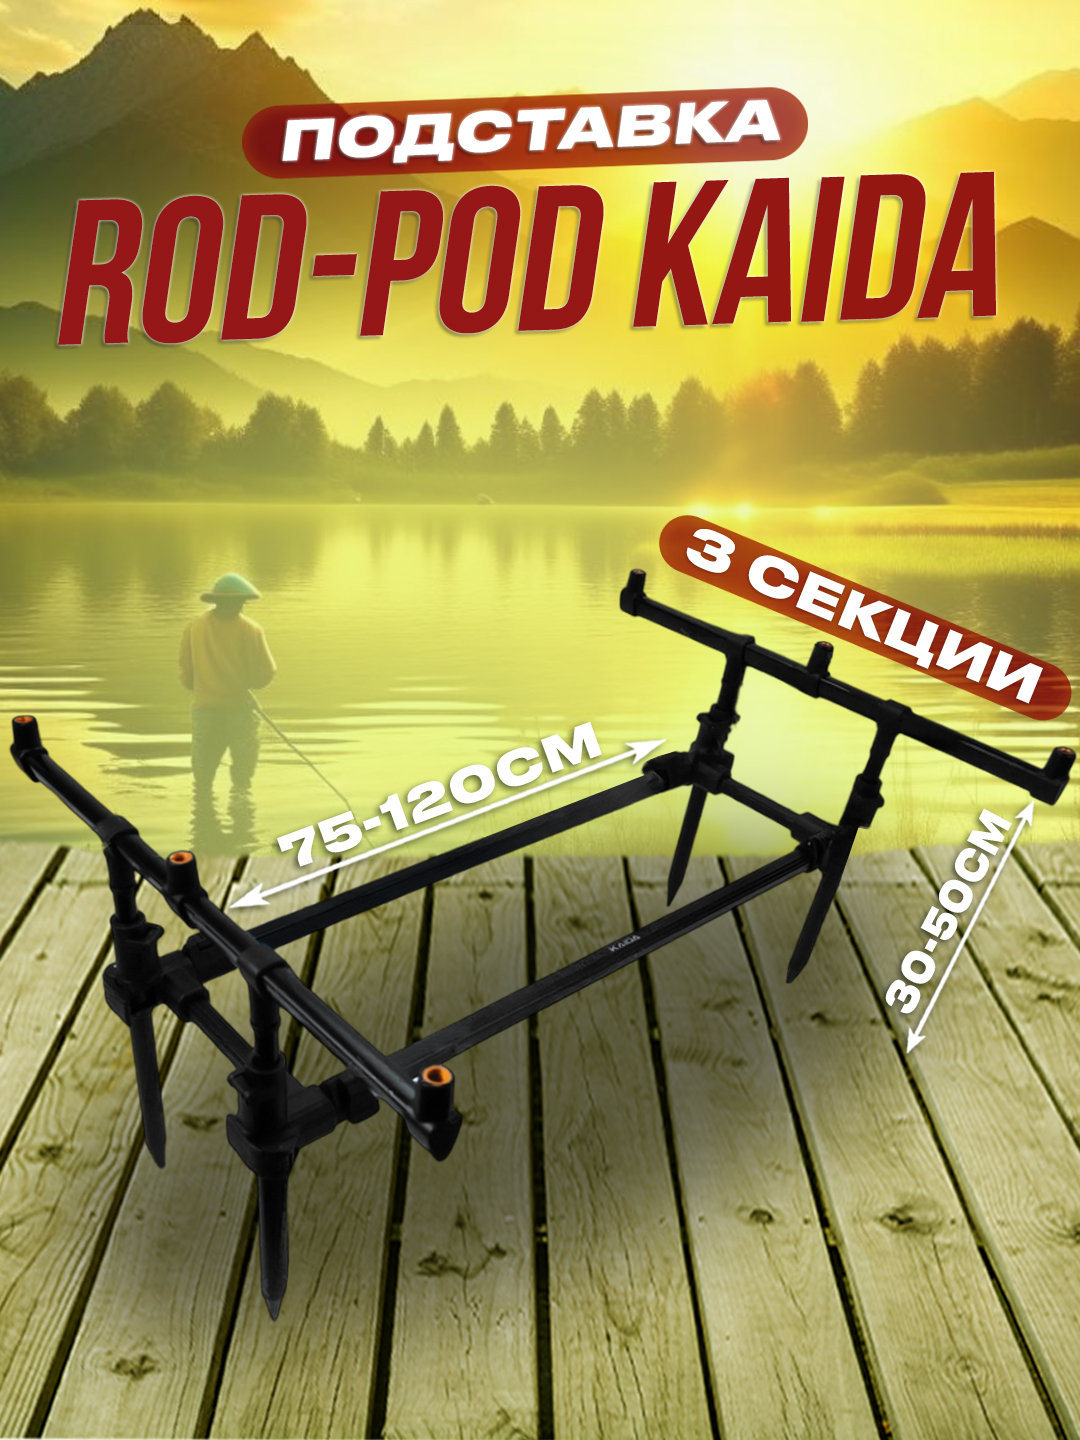 Подставка для 3-х удилищ 100Крючков Rod - Pod